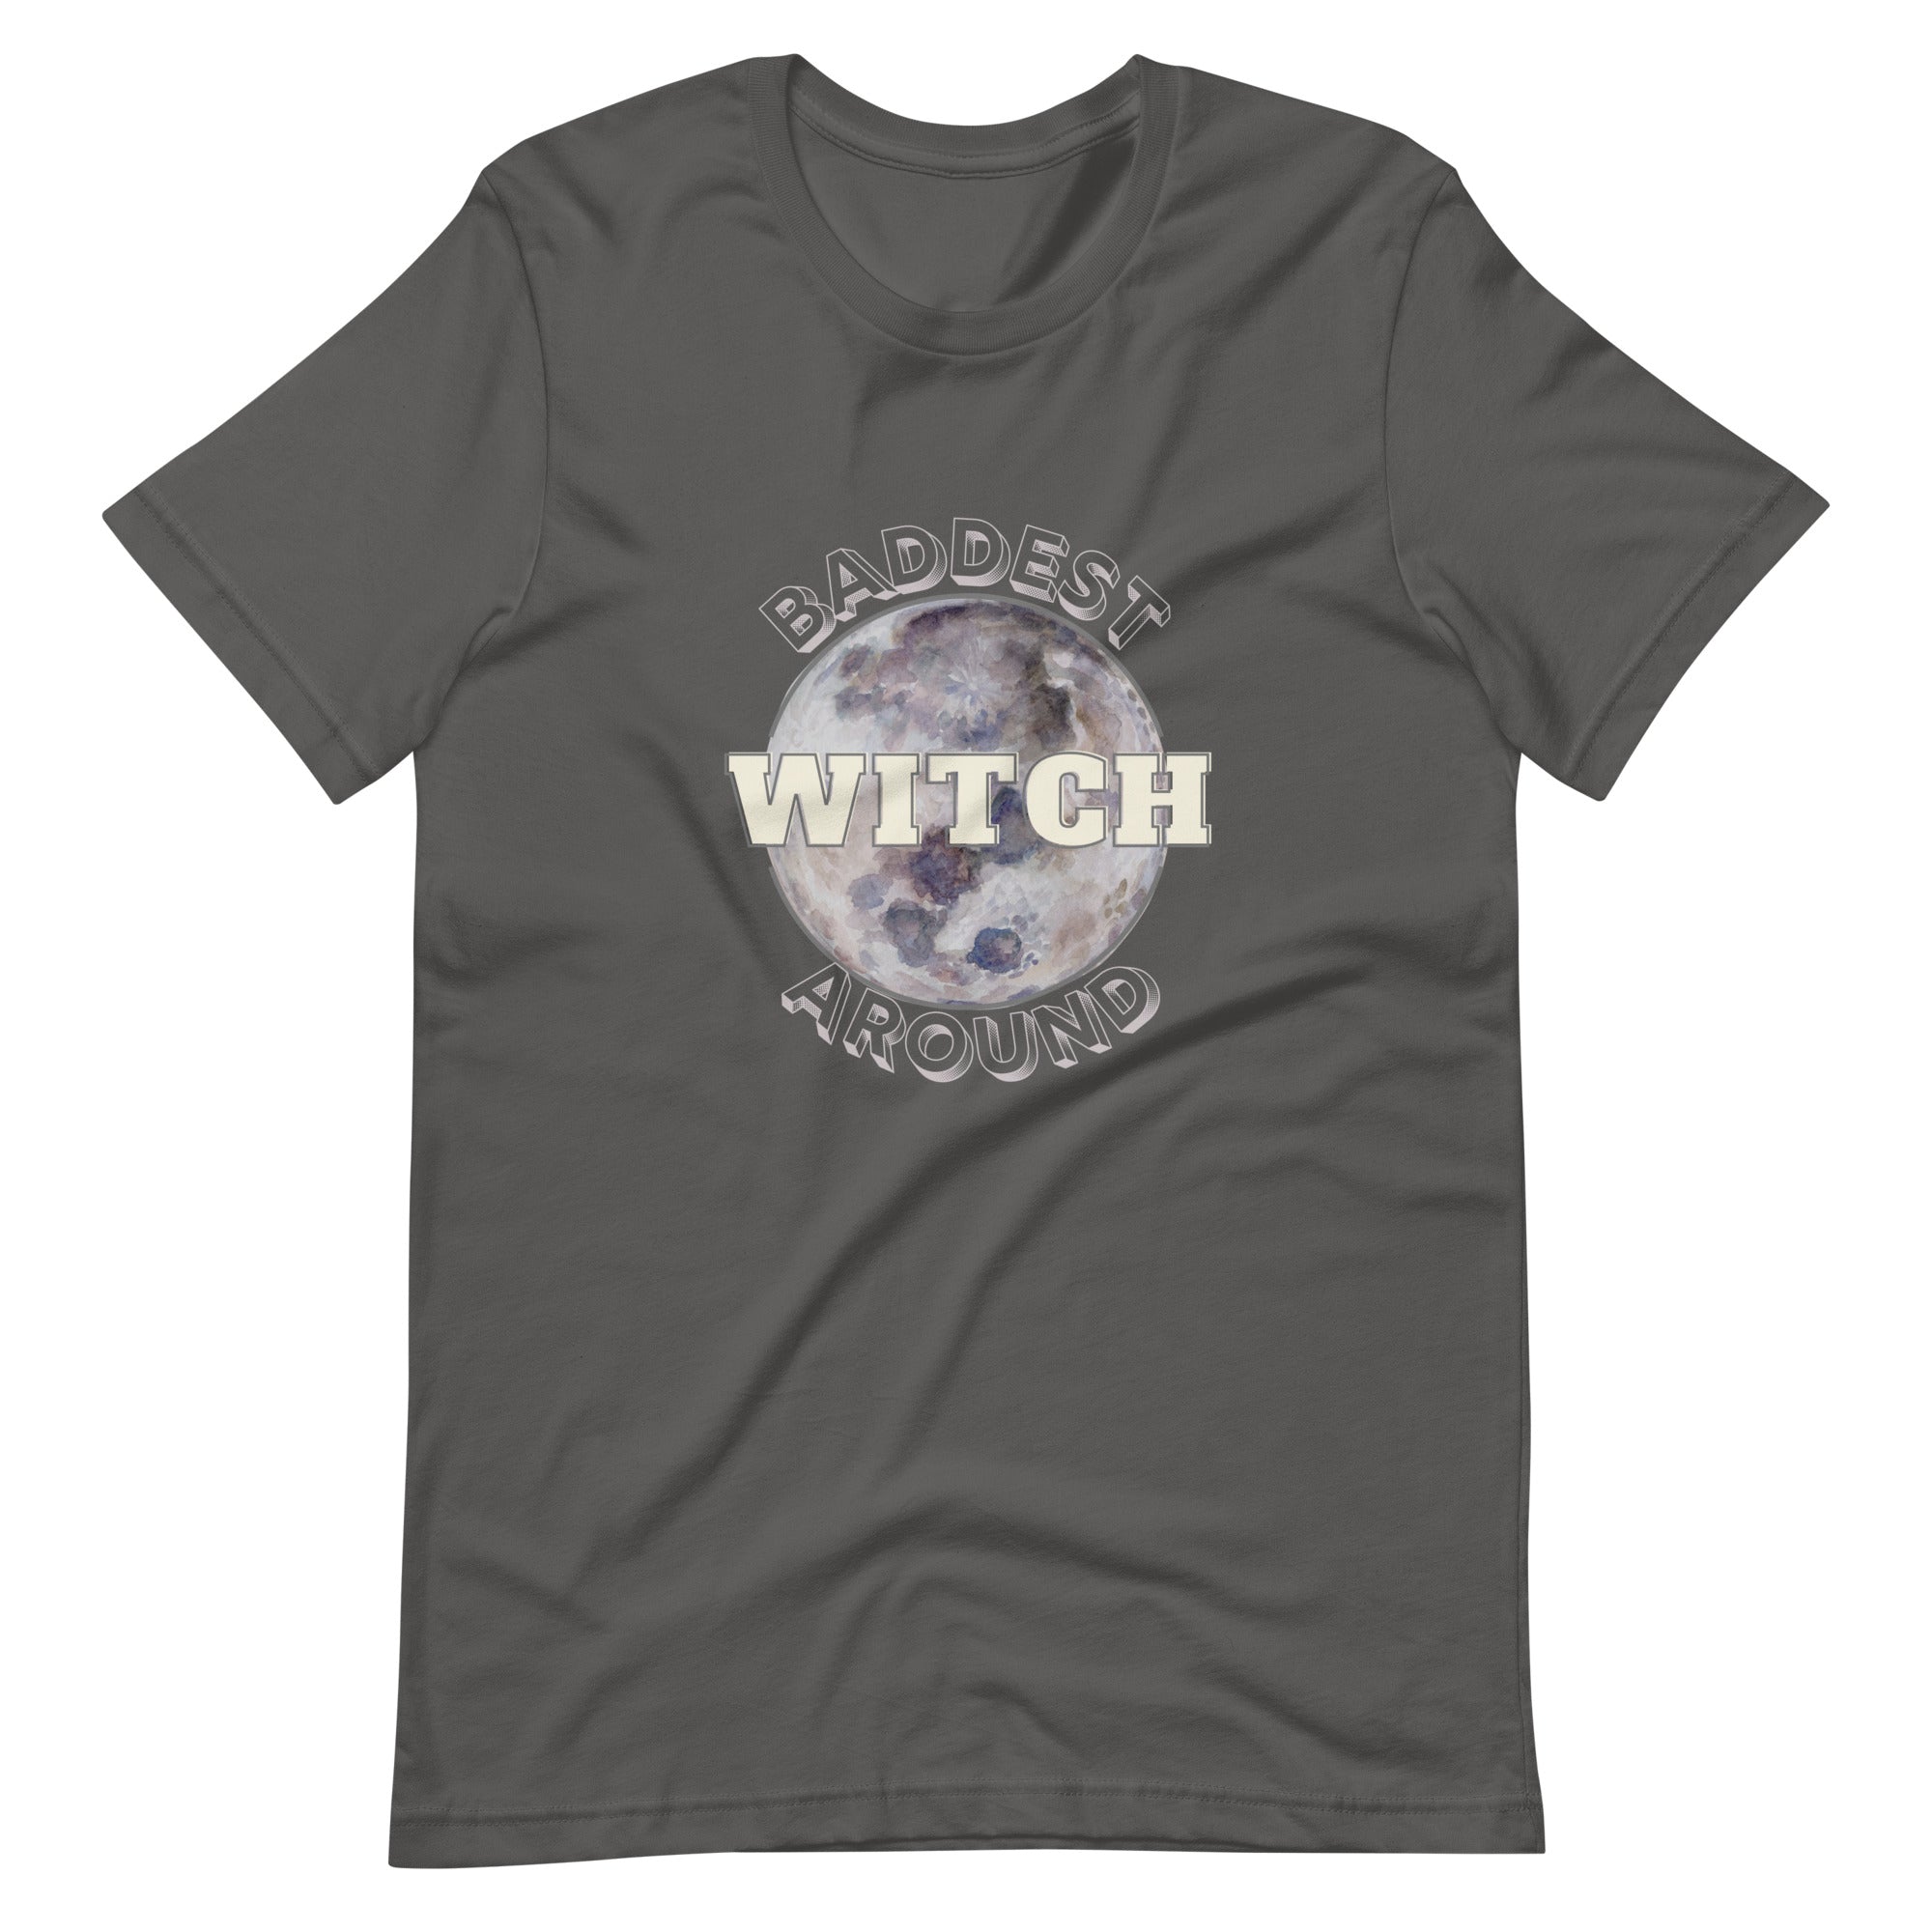 Baddest Witch Around Unisex t-shirt